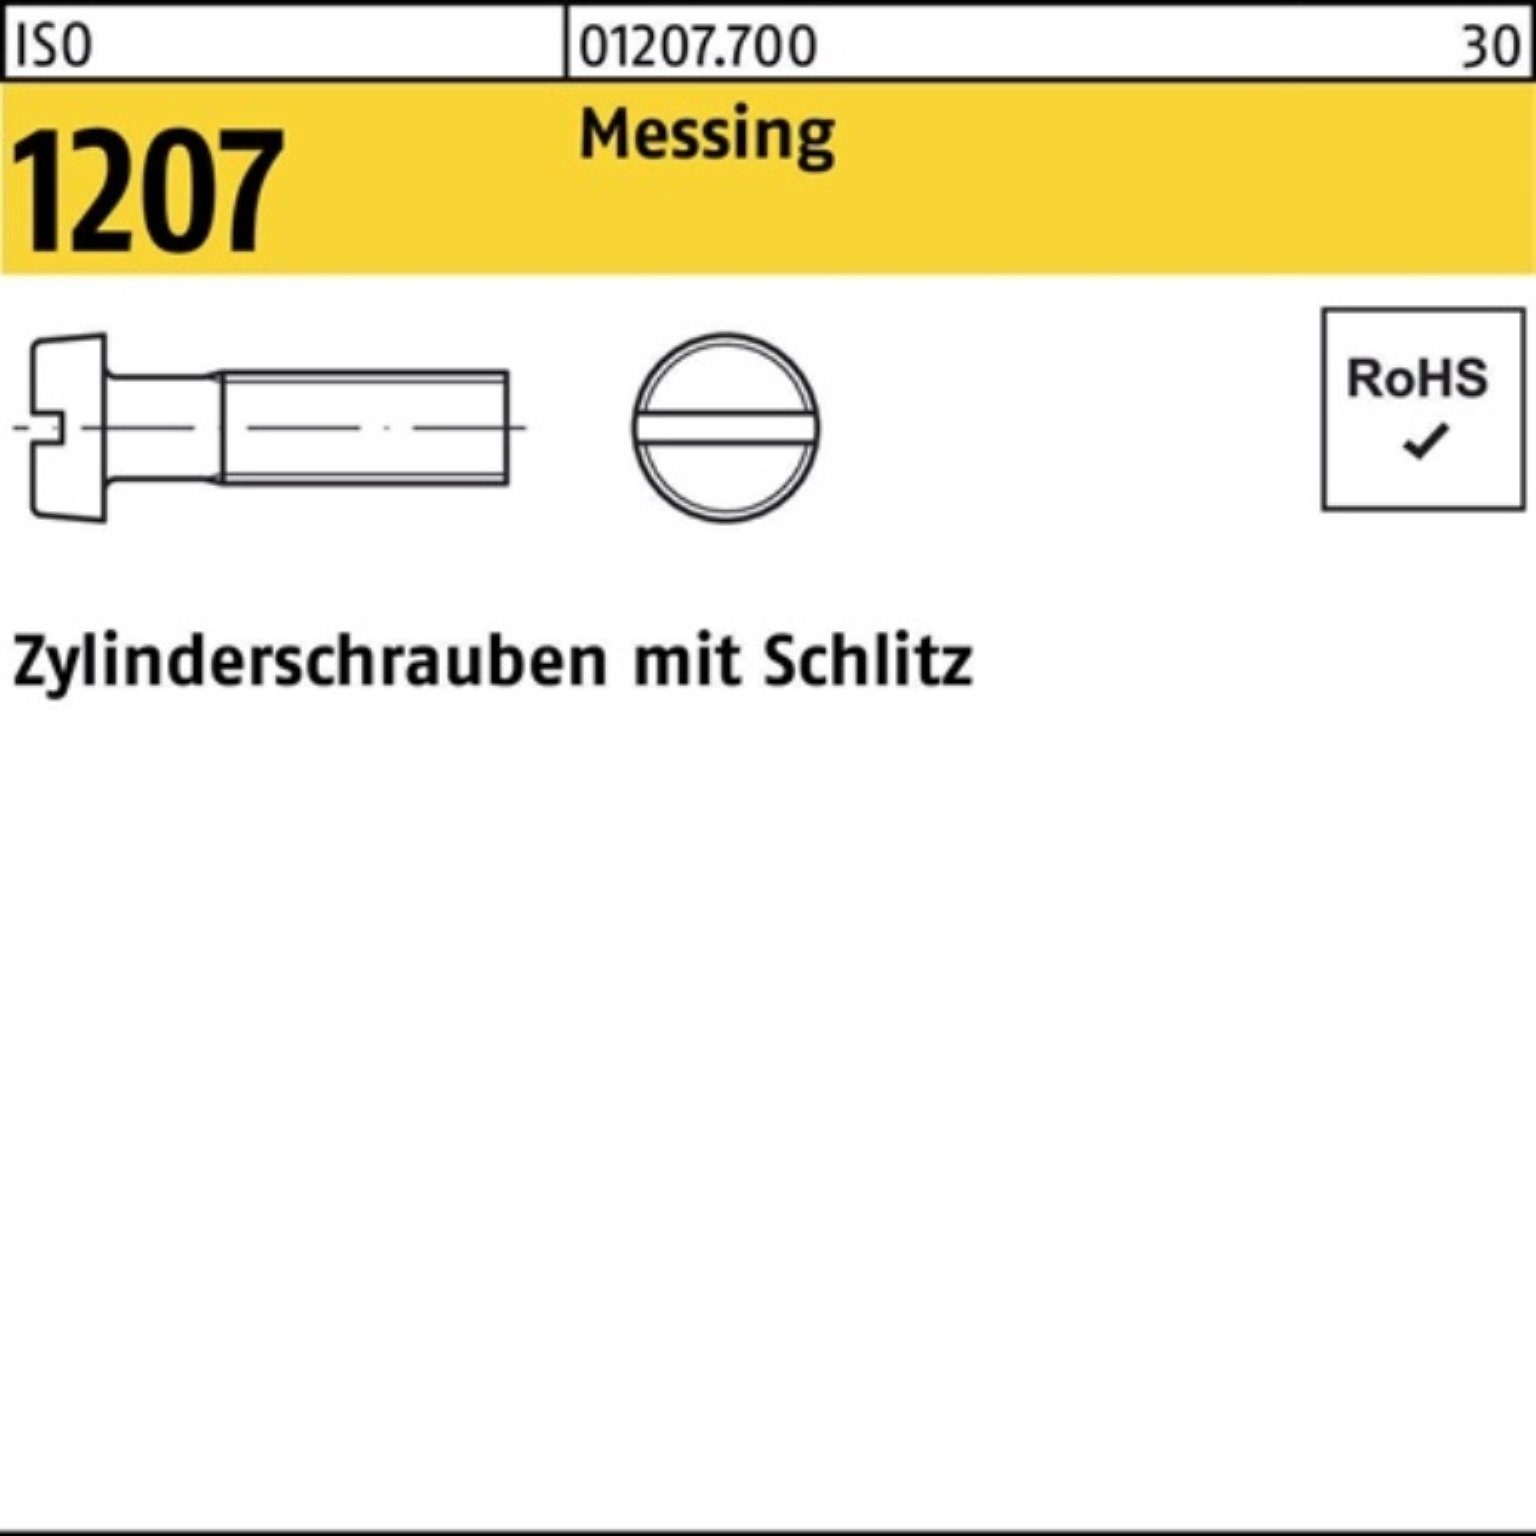 Zylinderschraube Zylinderschraube Messing Stüc 50 ISO Pack 100er Schlitz 100 1207 Reyher M10x